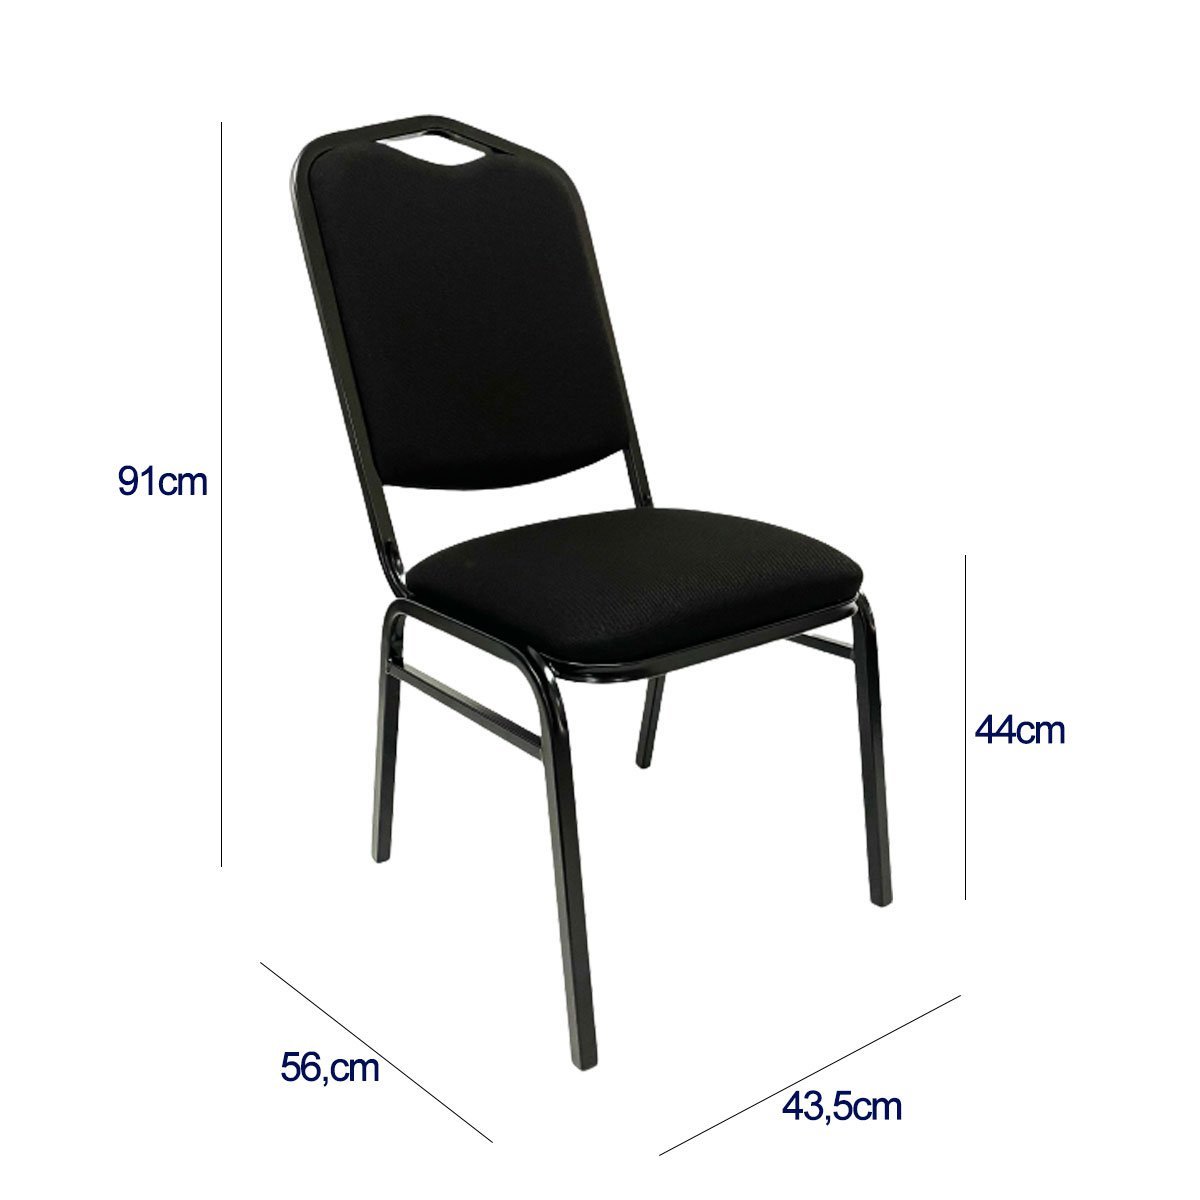 Kit 6 Cadeiras para Hotel Auditório Igreja Restaurante Eventos com Reforço Empilhável cor Preta Polt - 6